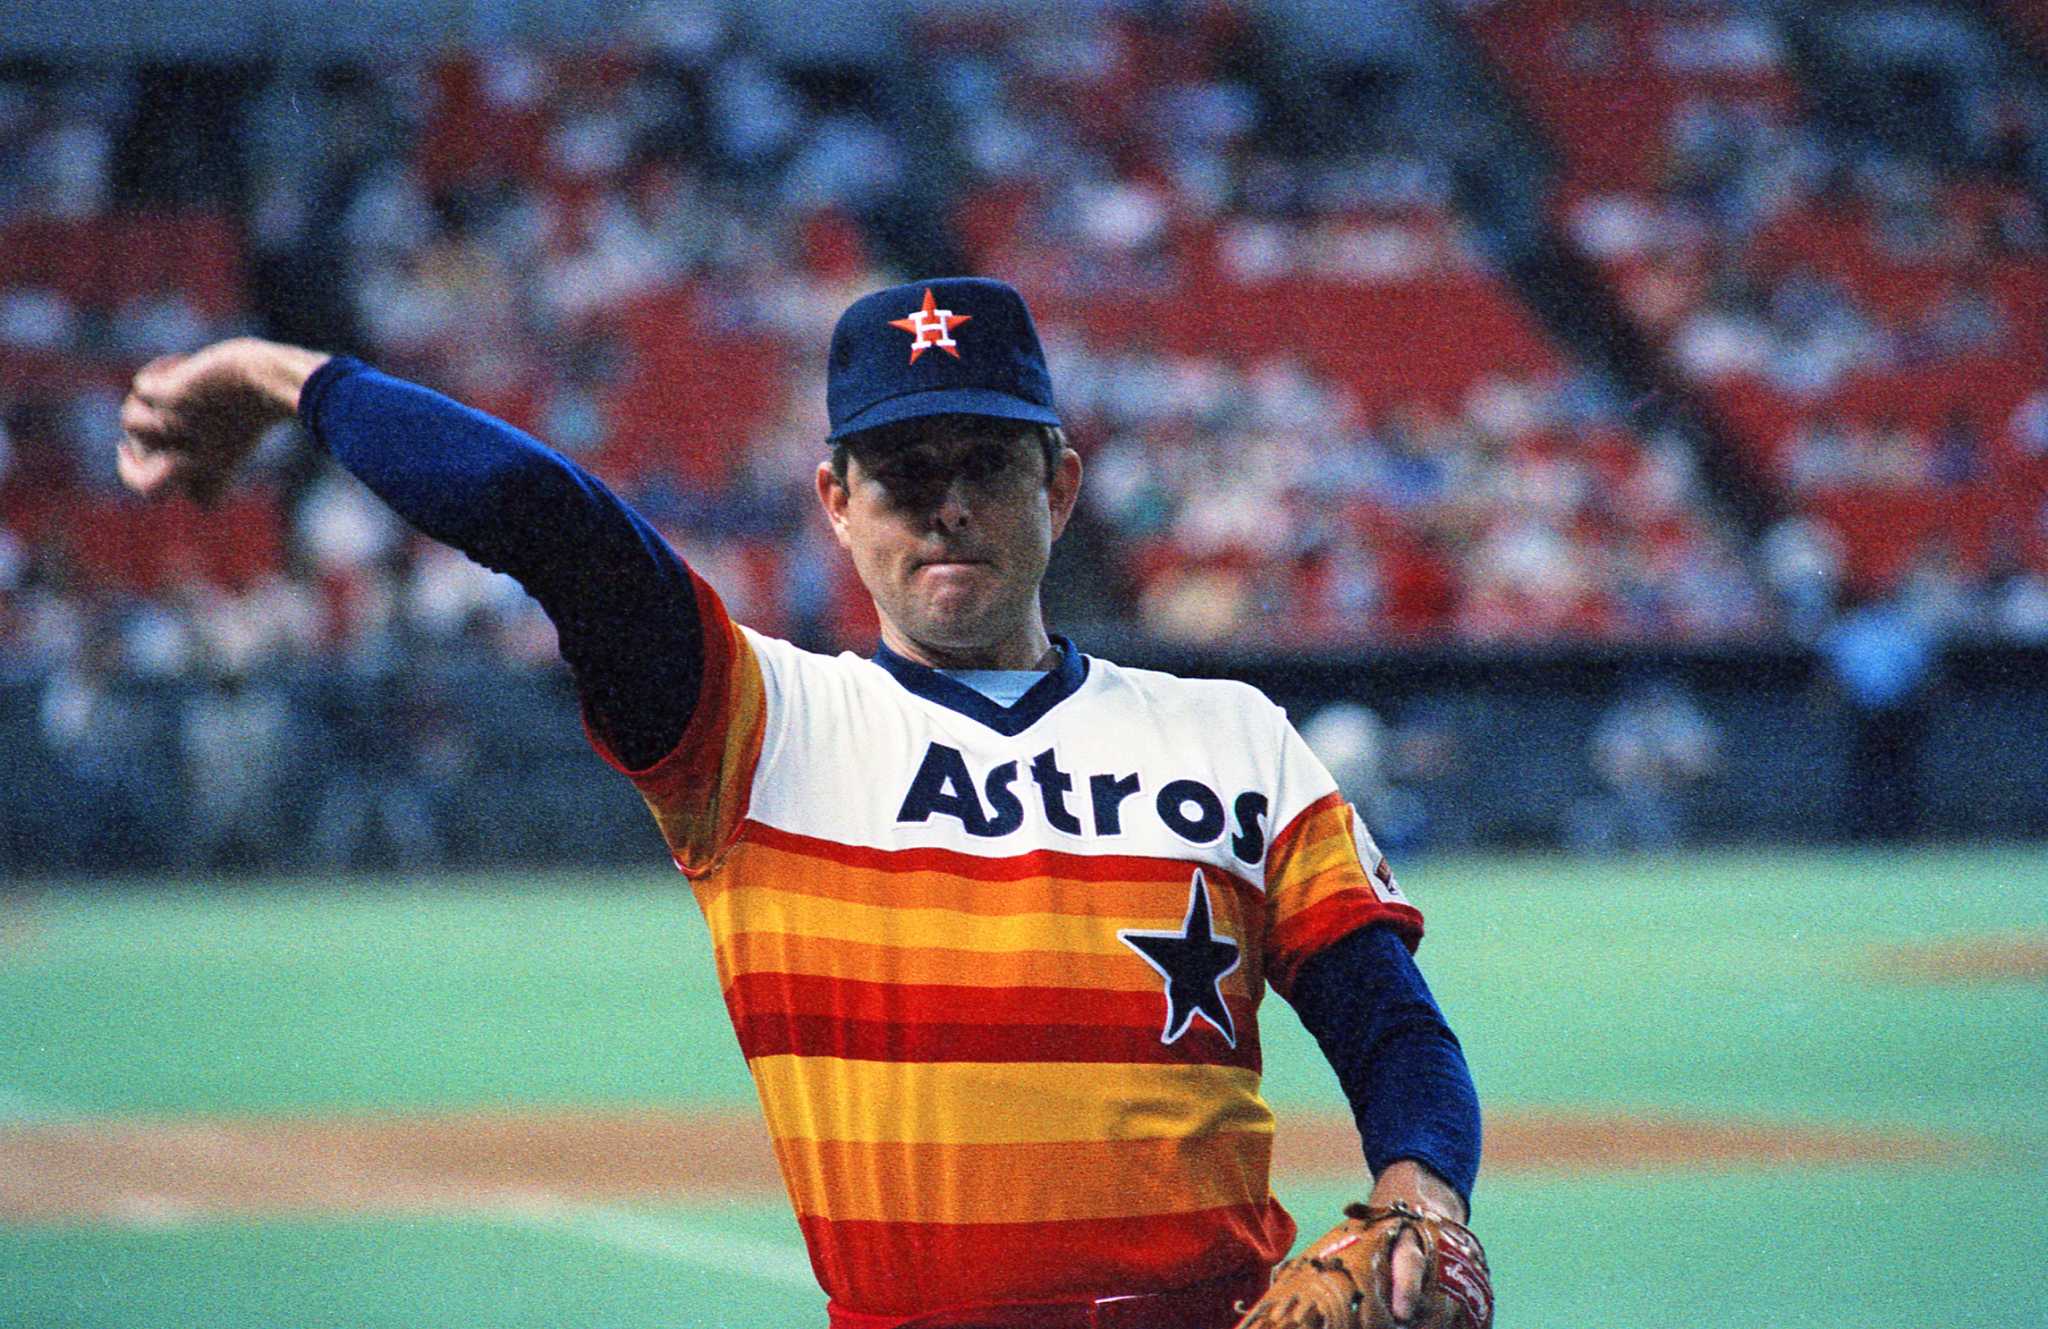 1980s astros uniforms